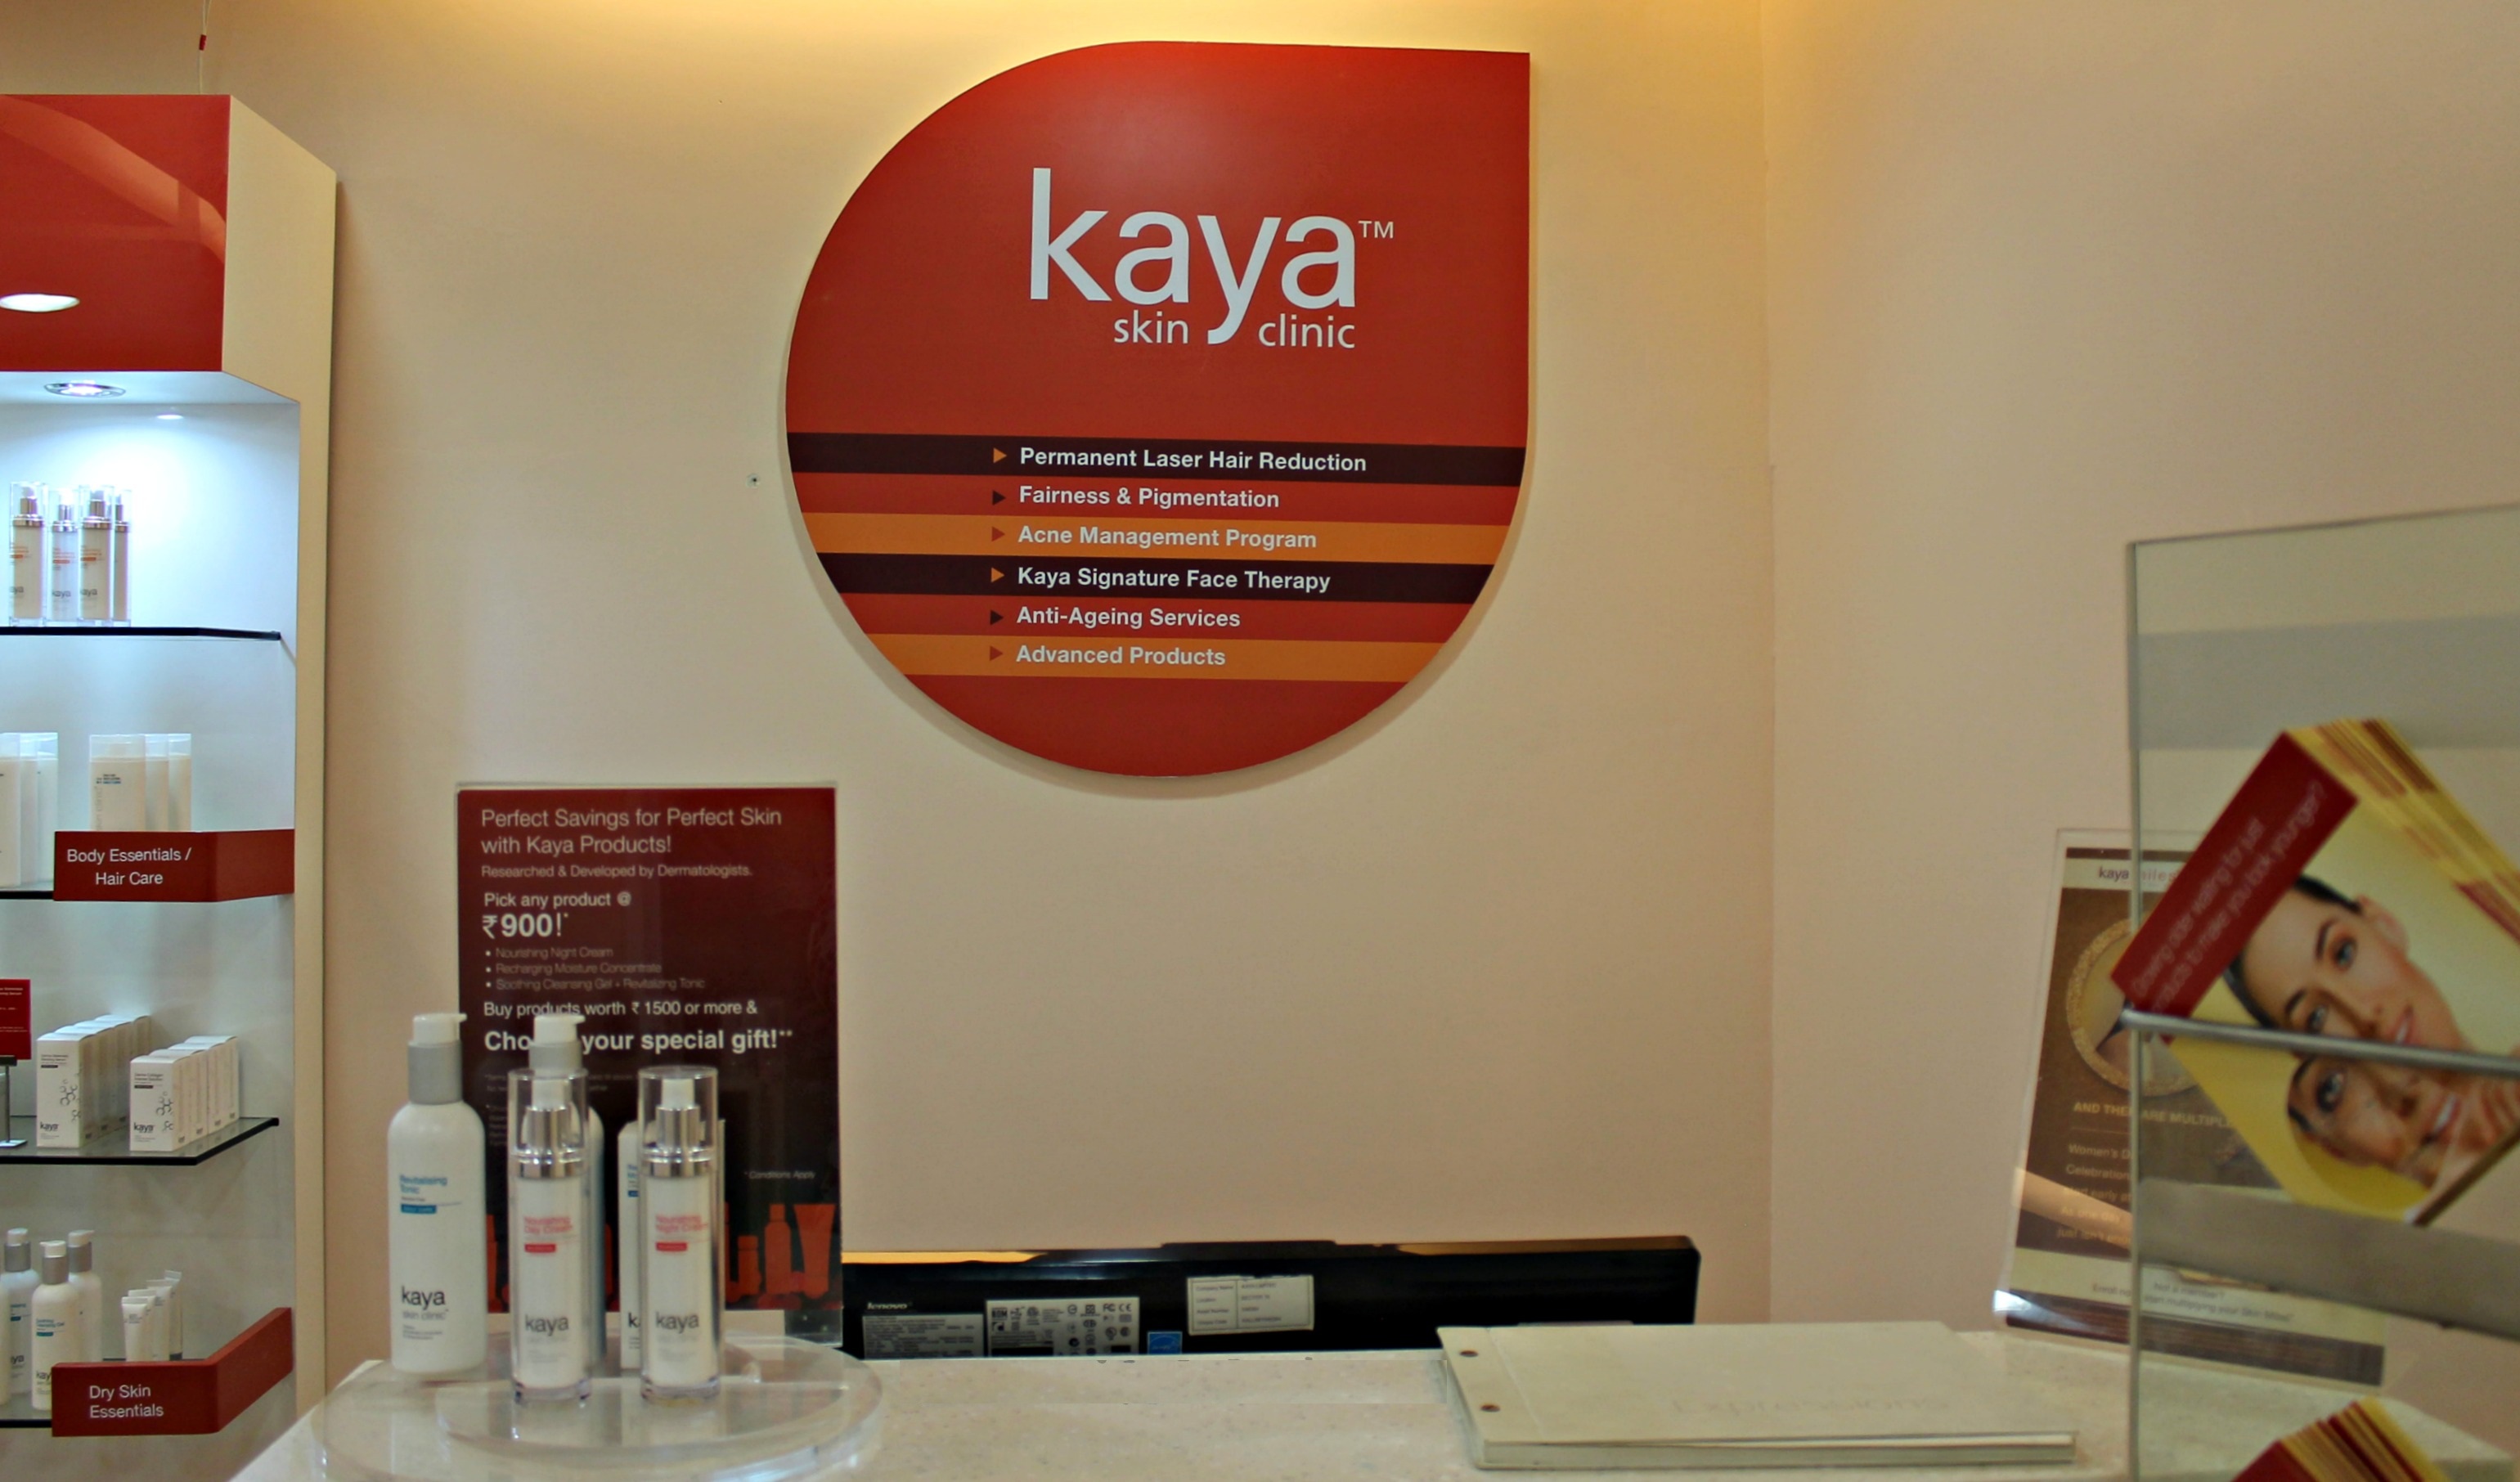 Kaya Skin Clinic: India's One of The Best Skin Care & Treatment Center |  Fashion Guruji